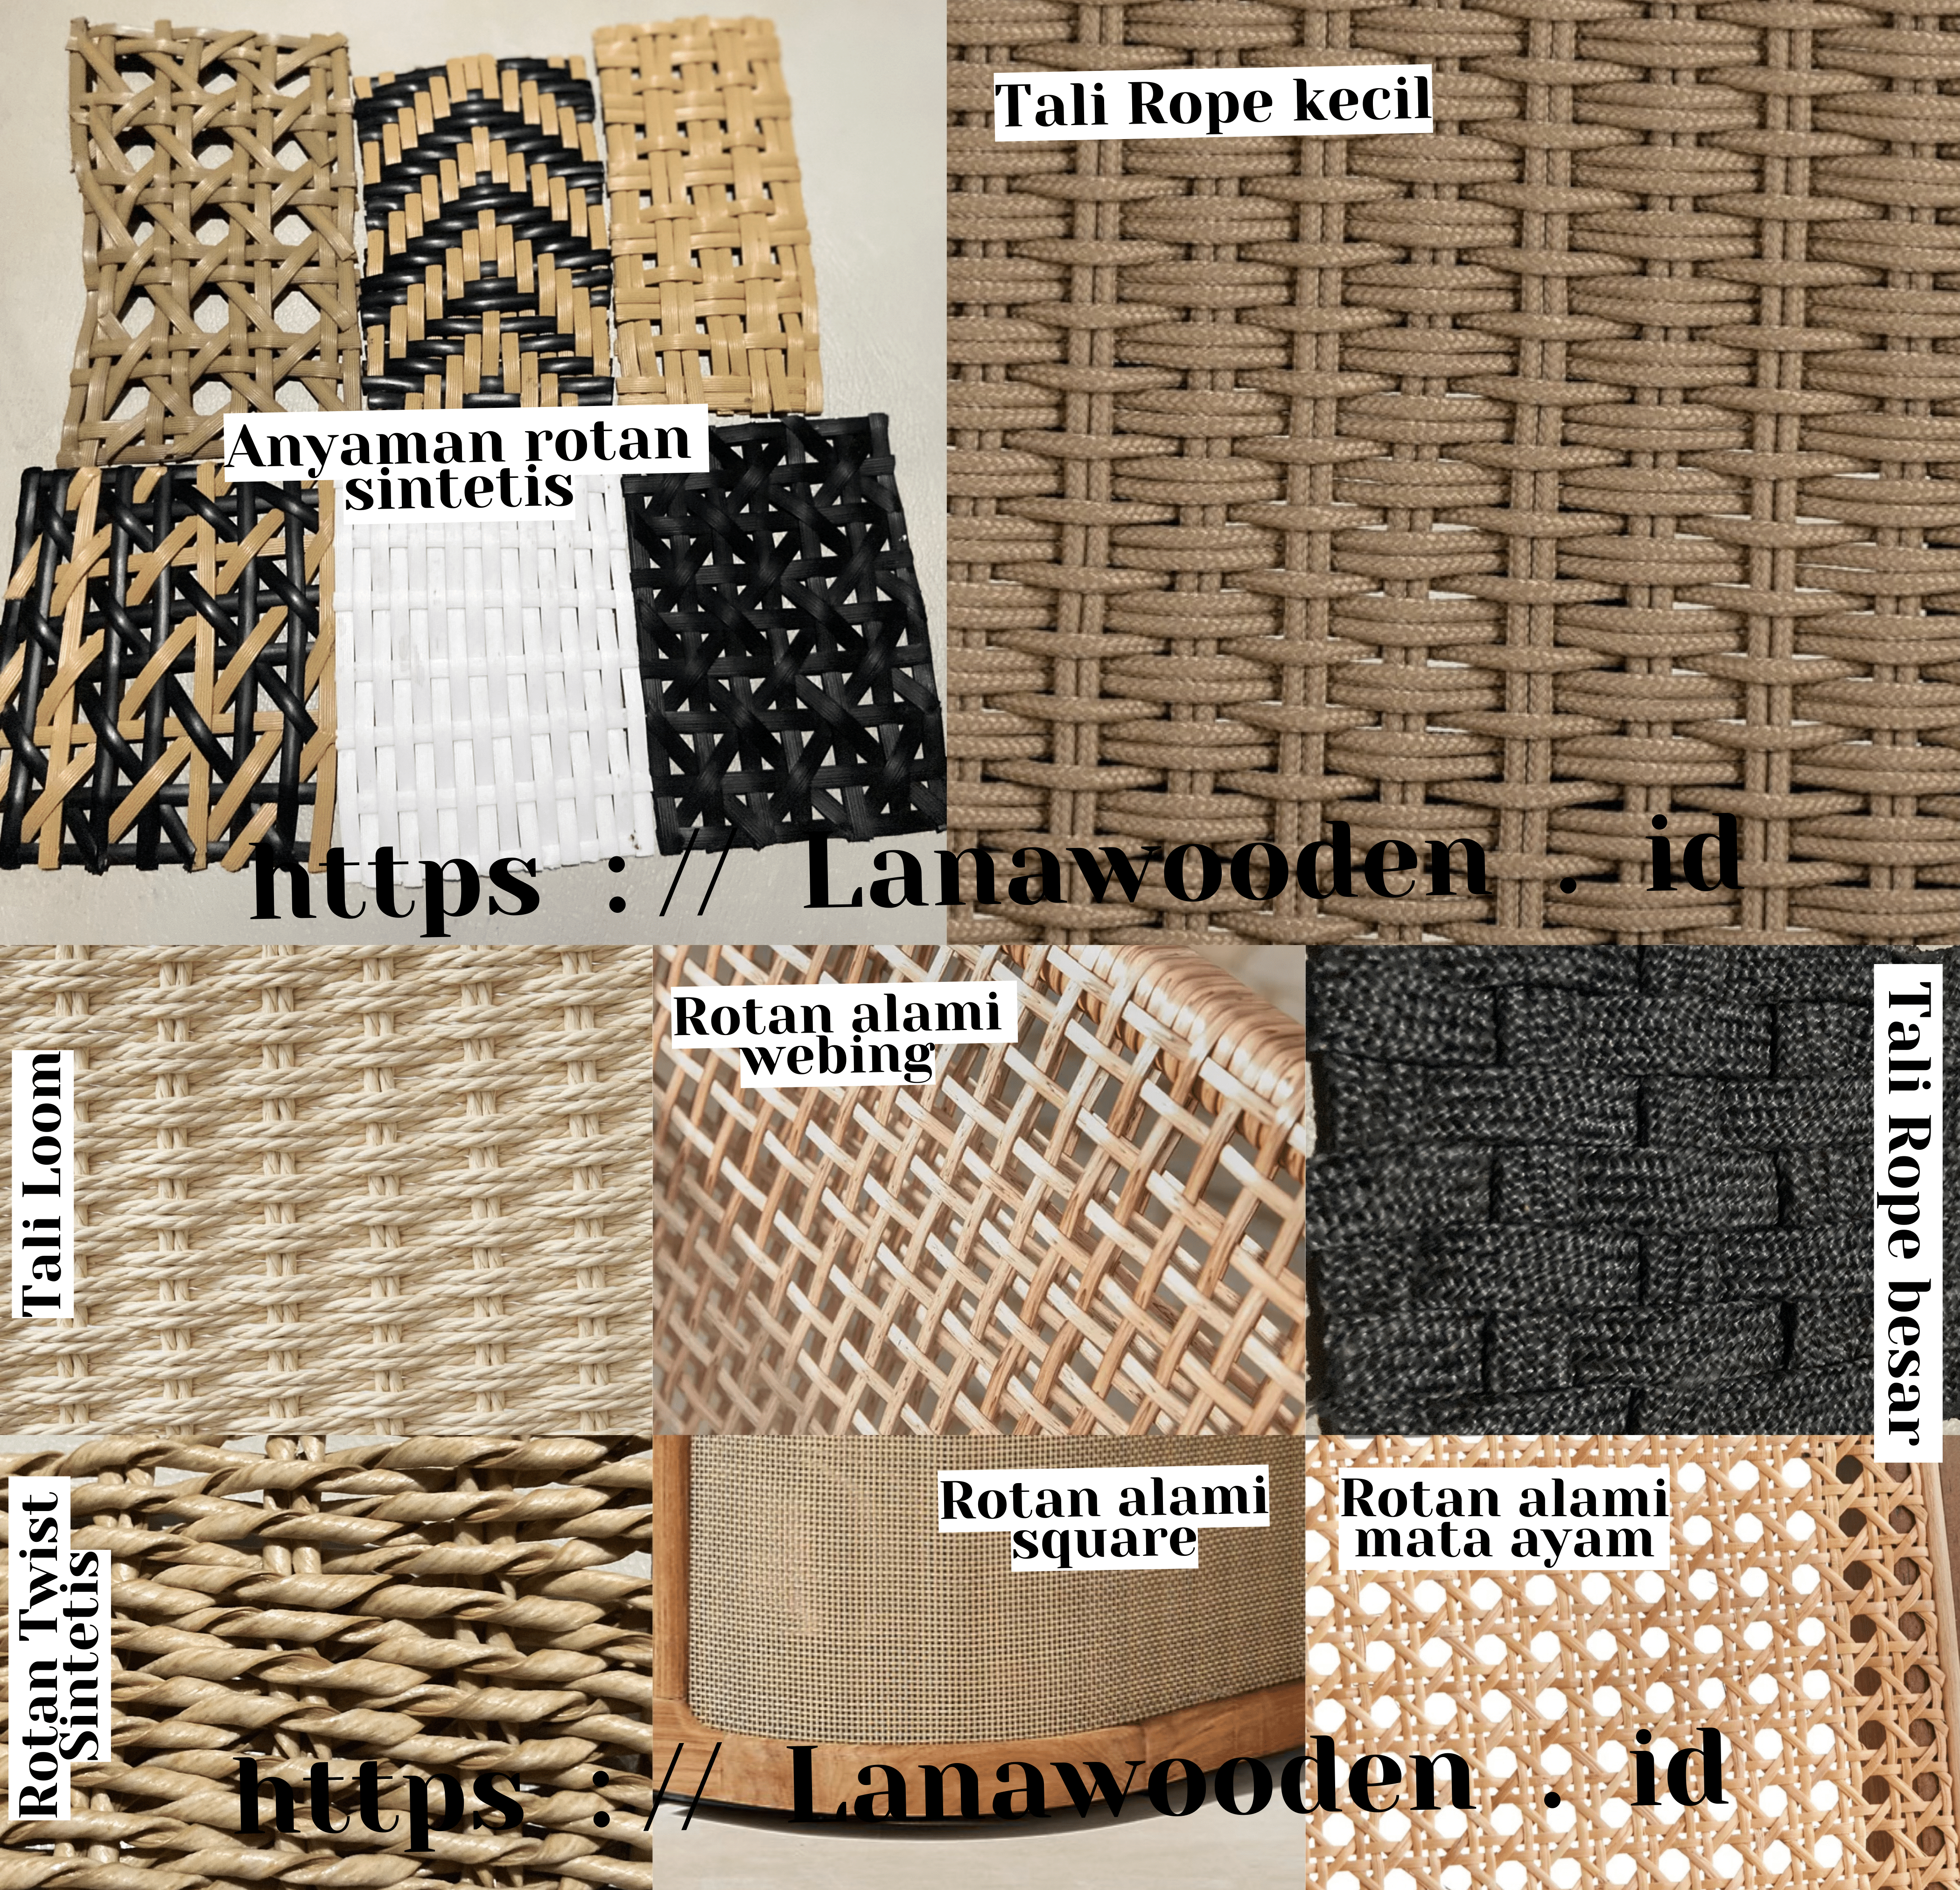 Pilihan material jenis tali anyaman untuk furniture dari Lanawooden.id